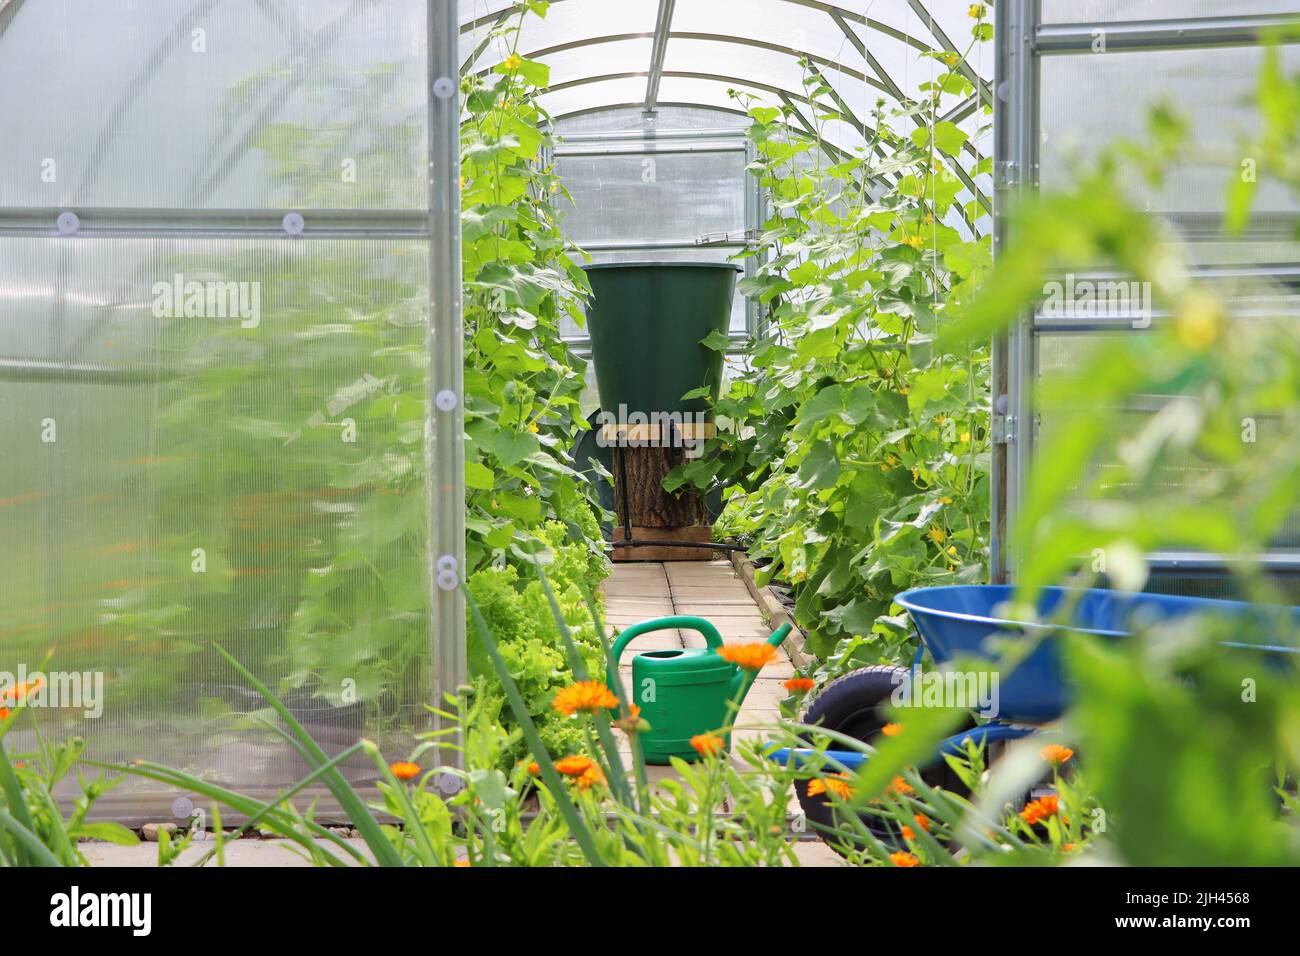 Greenhouse in back garden with open door Stock Photo